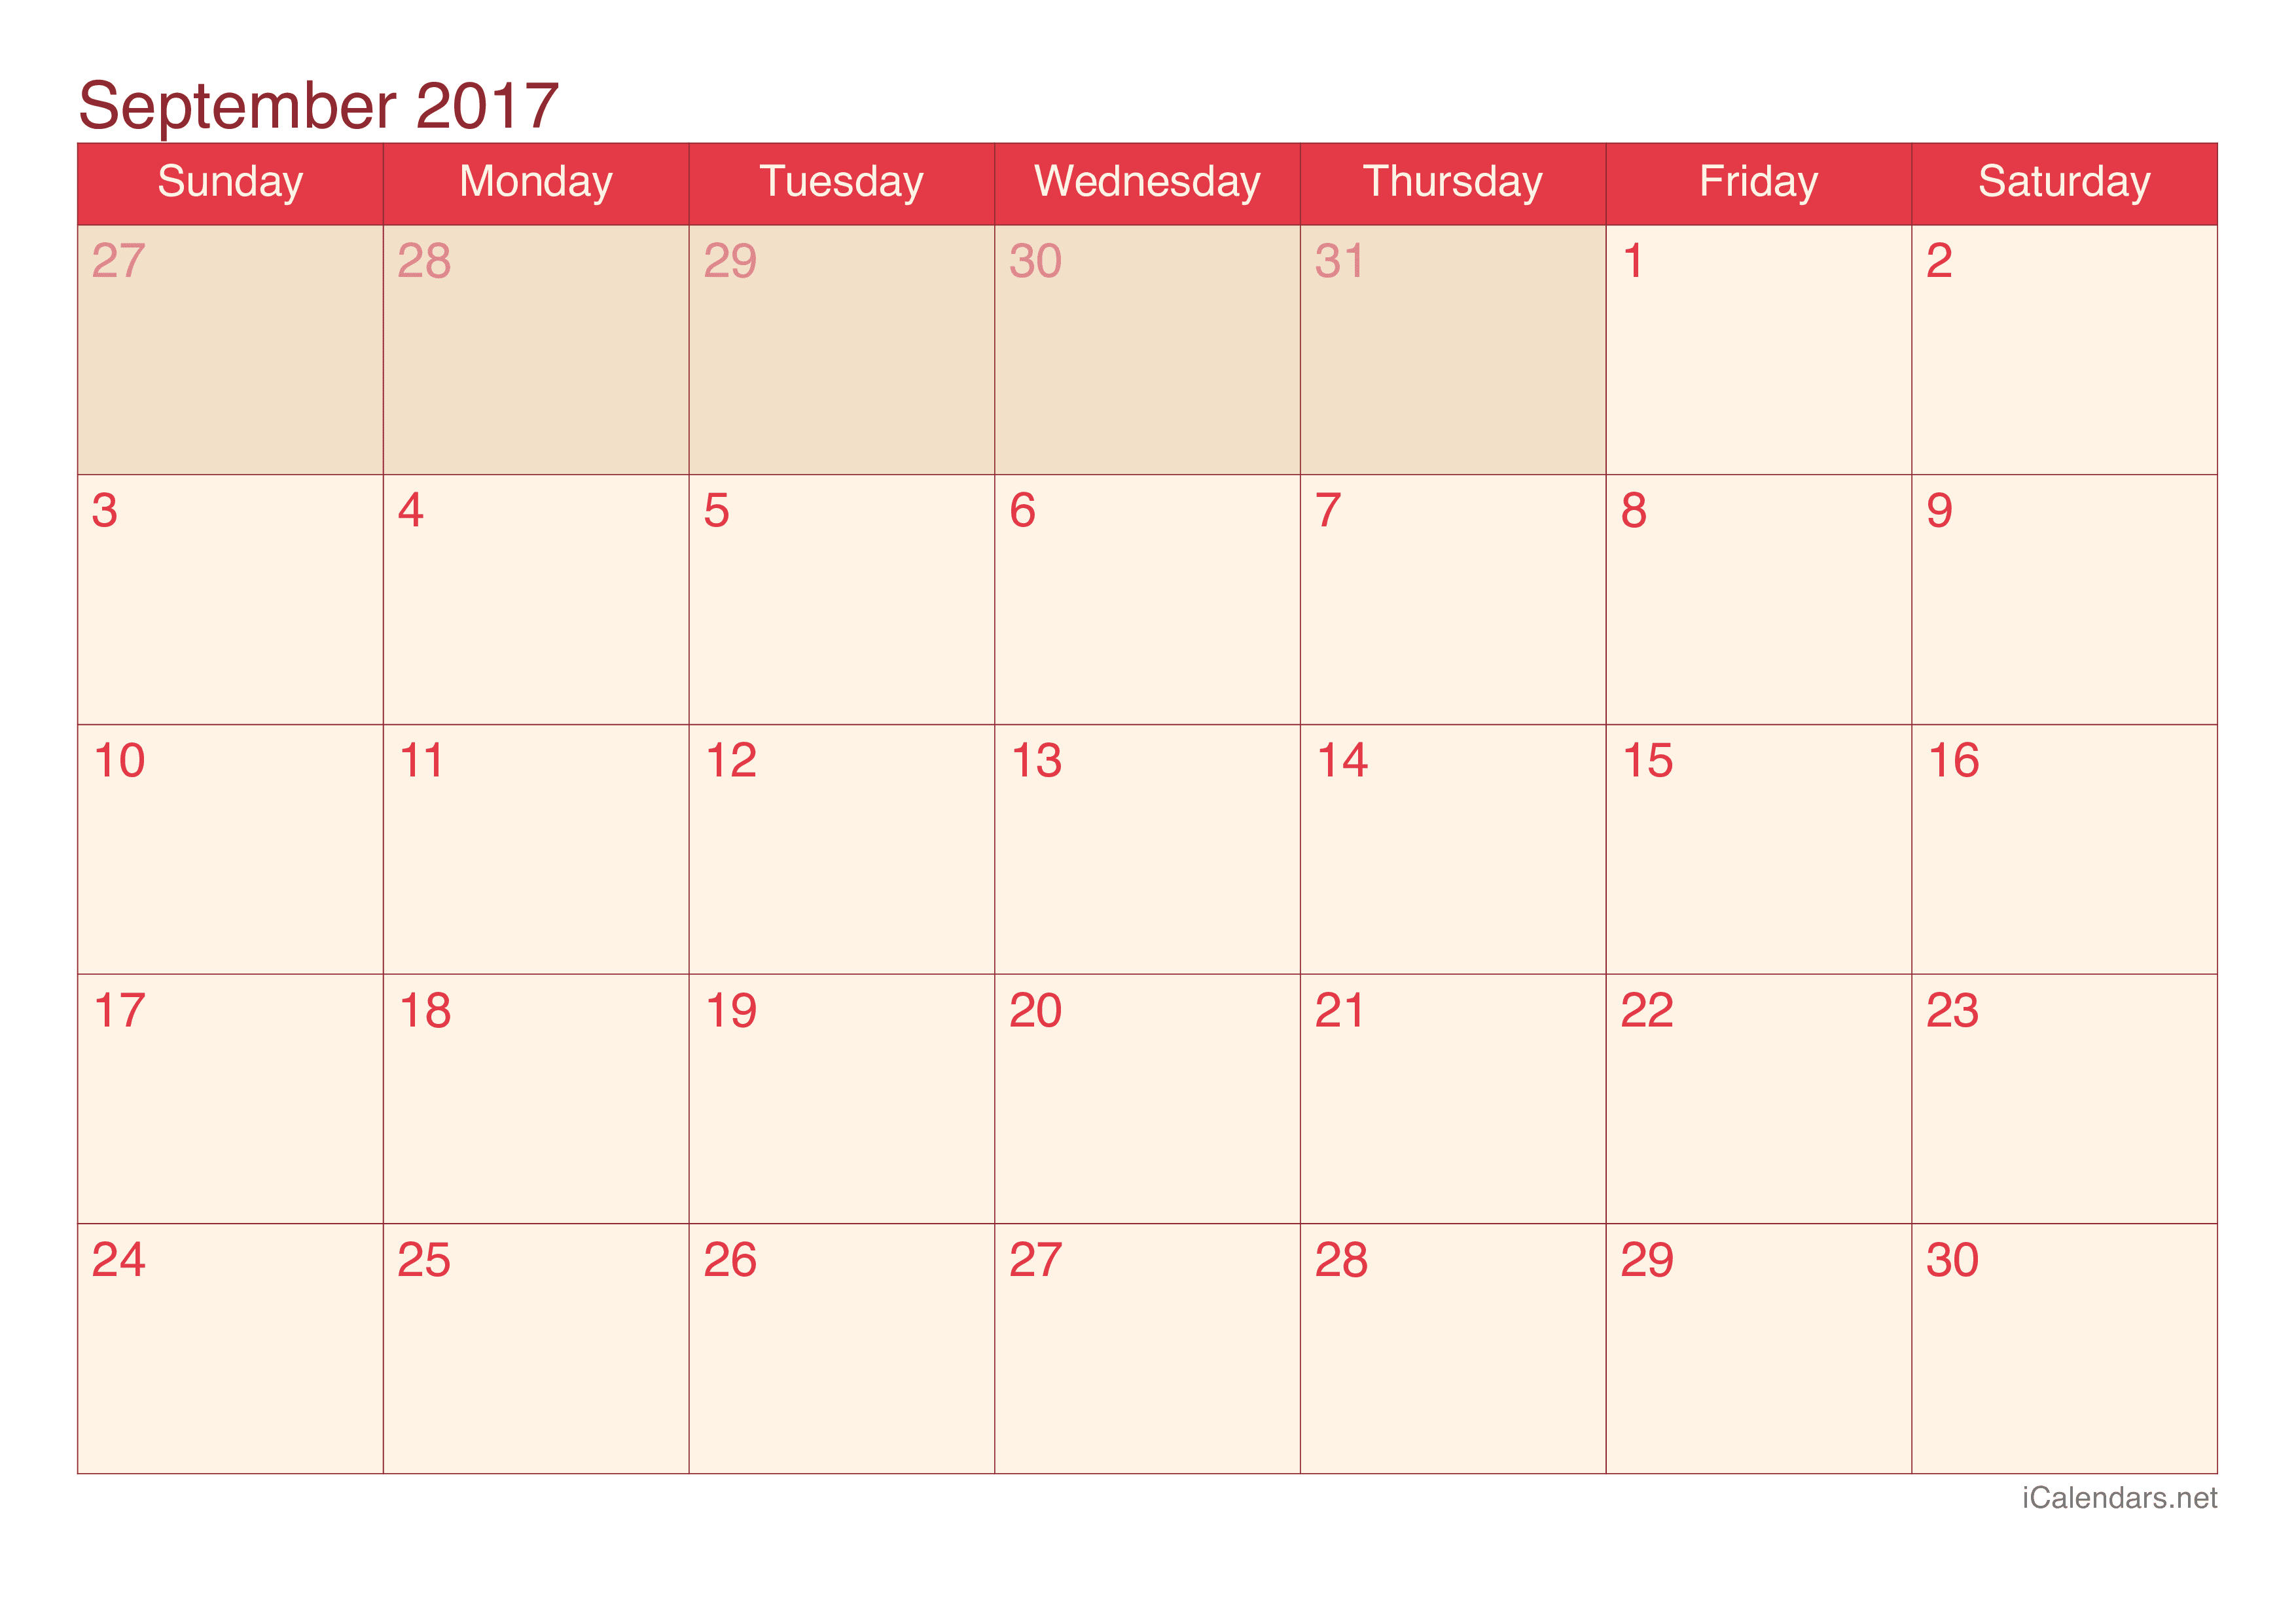 September 2017 Printable Calendar icalendars net